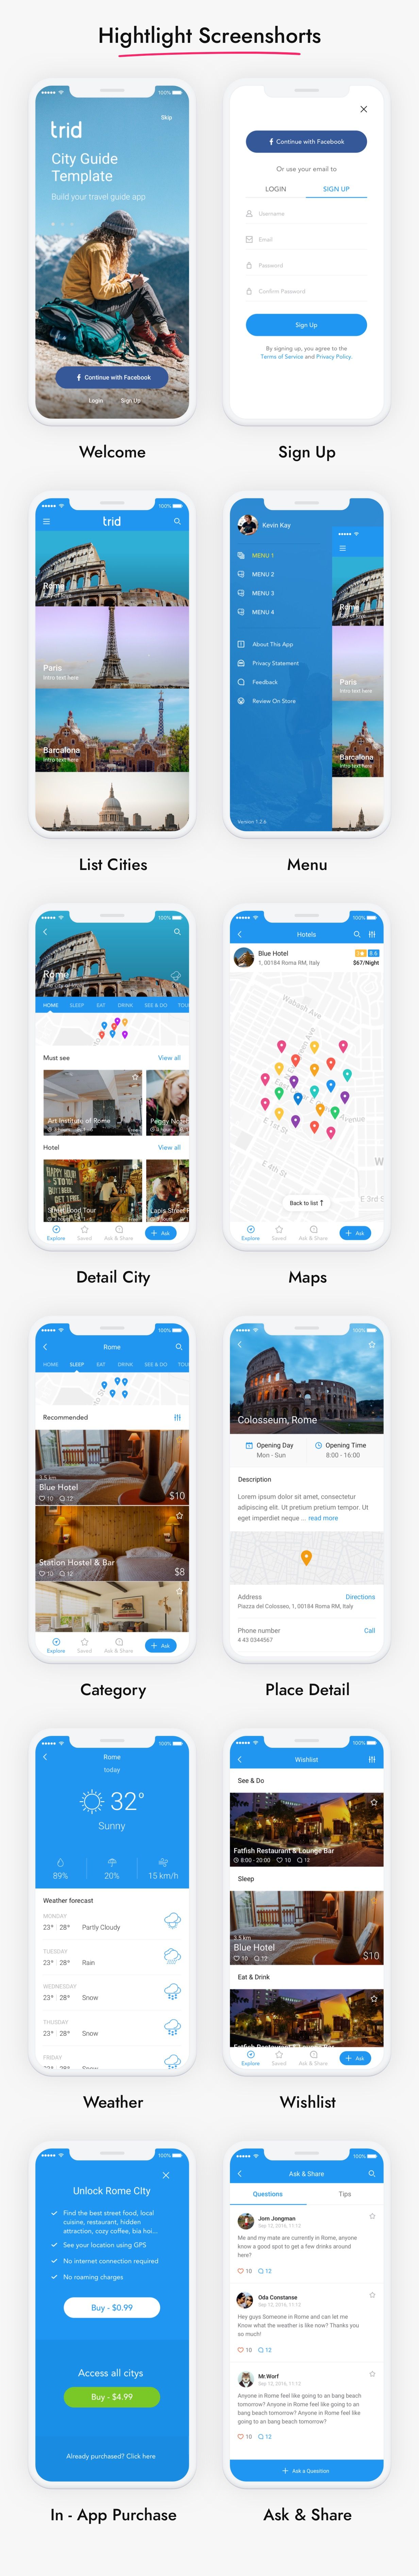 City Travel Guide iOS App